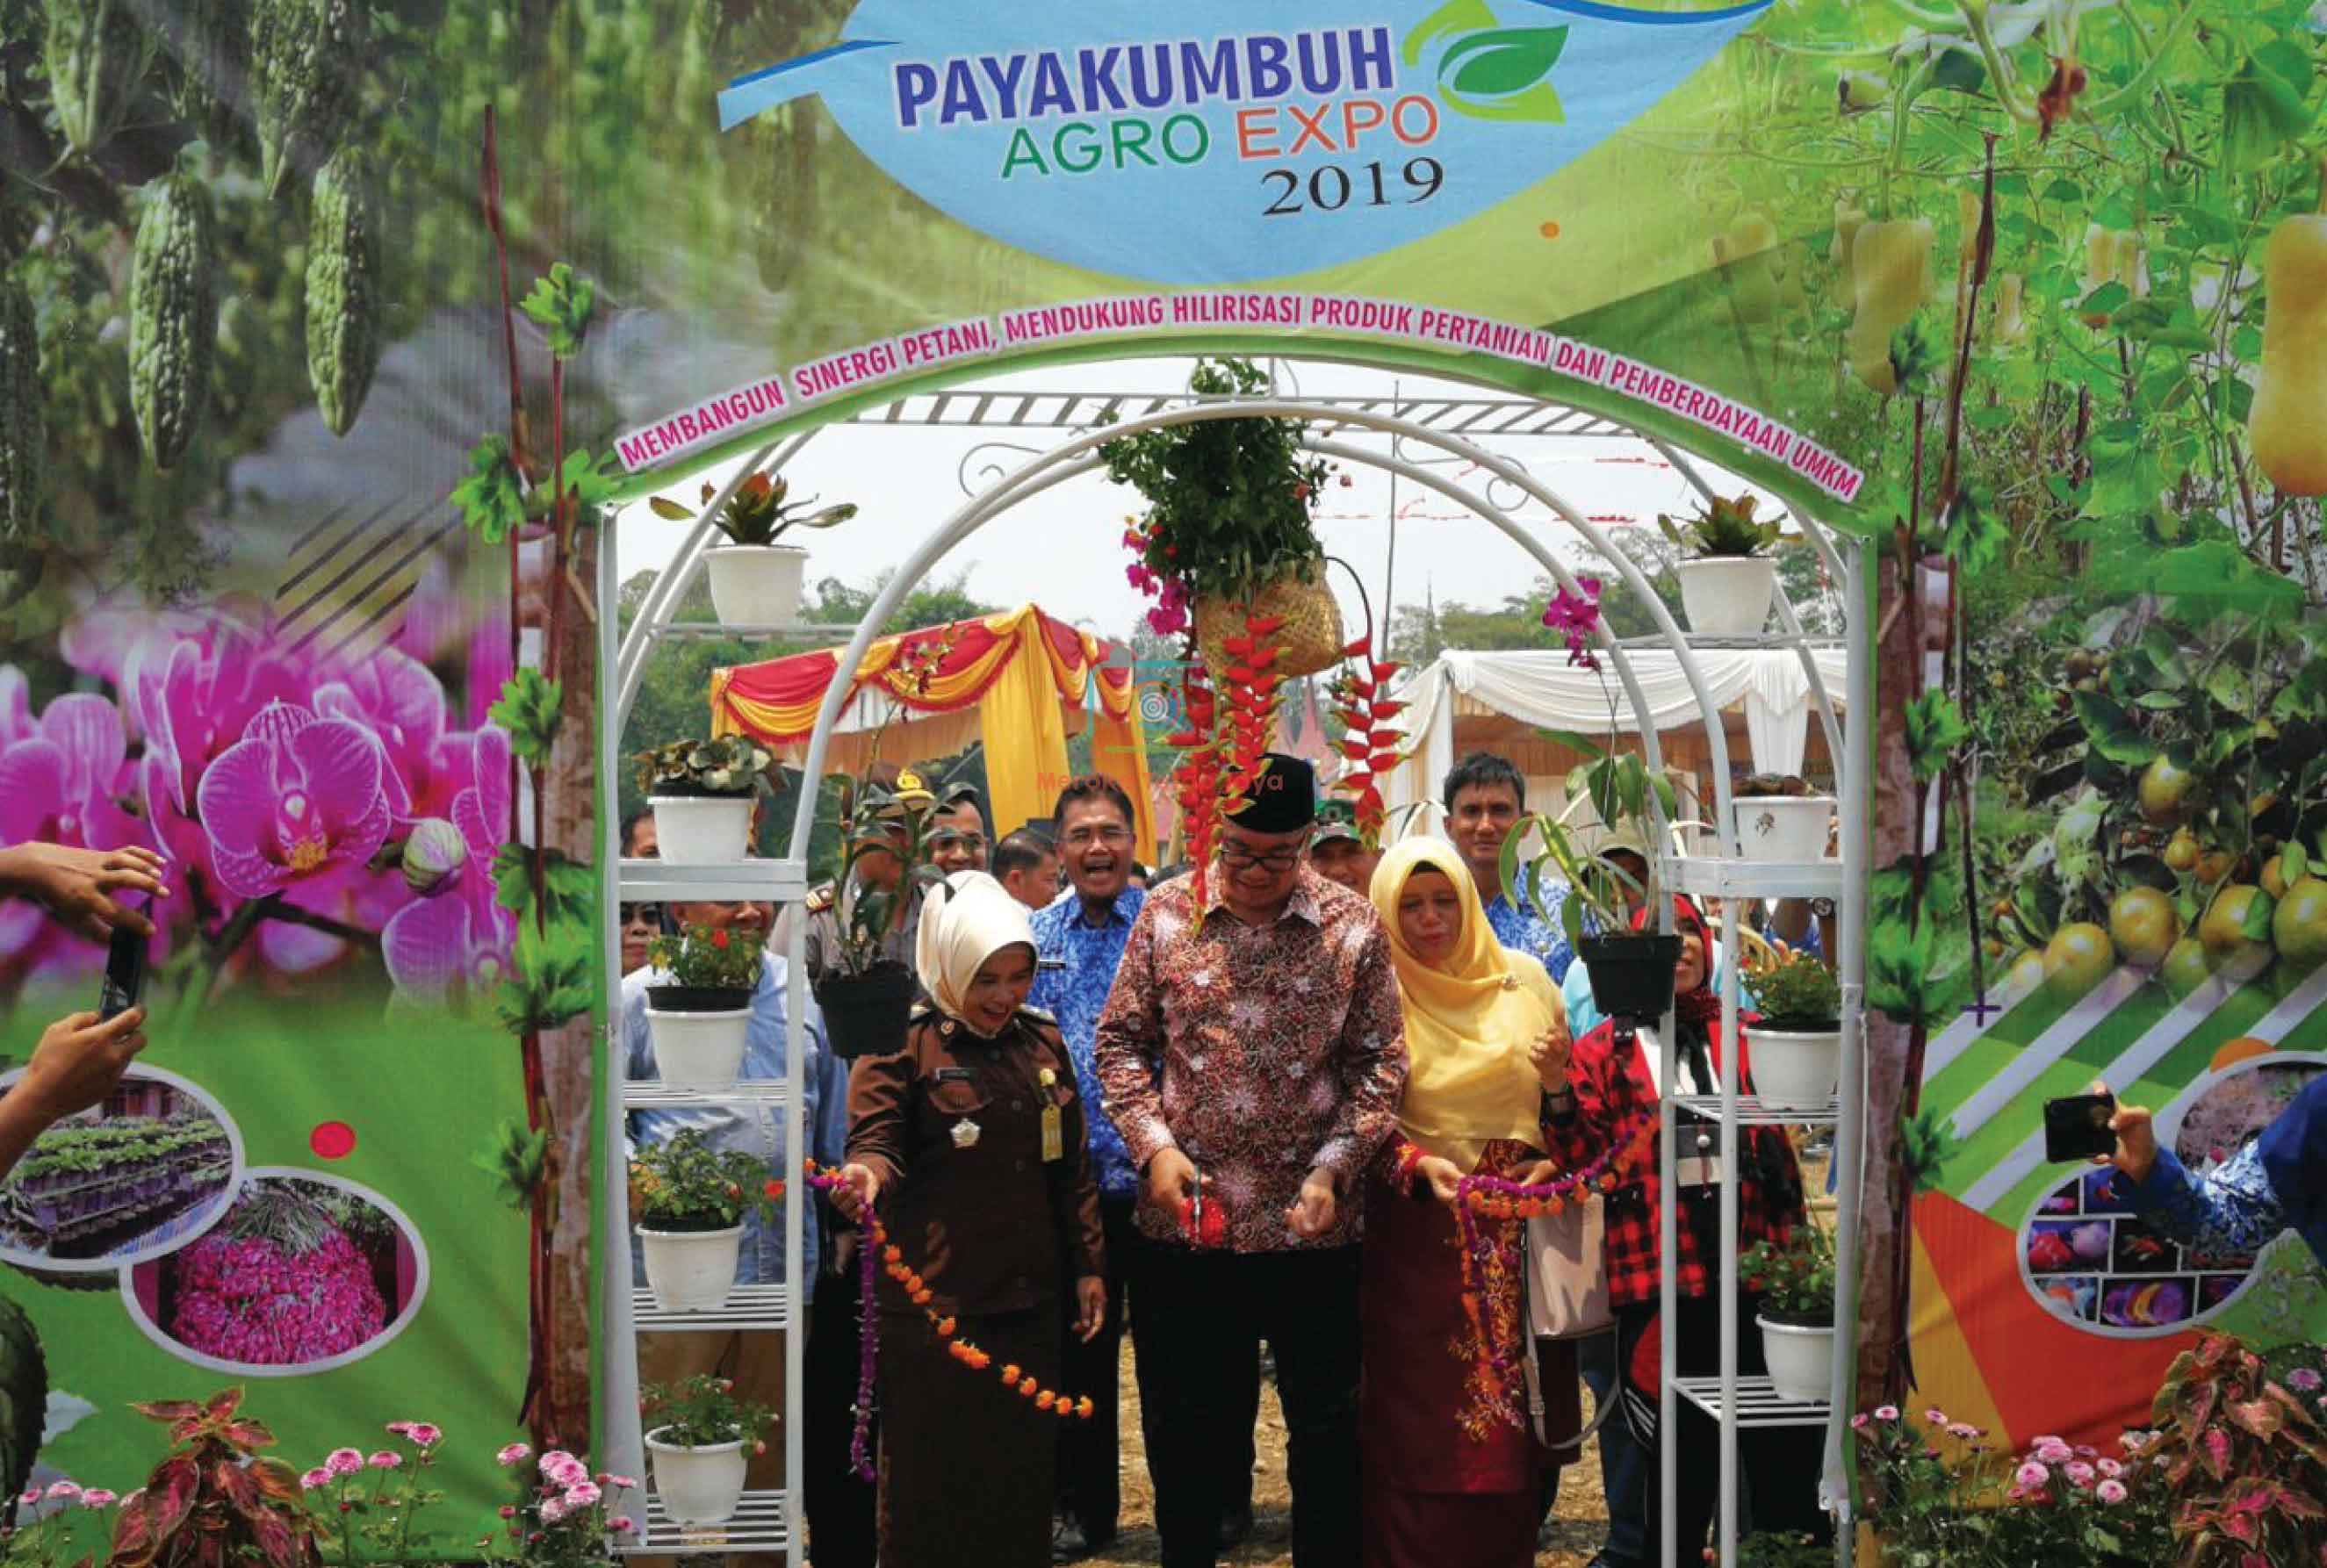 Agro Expo 2019: Payakumbuh